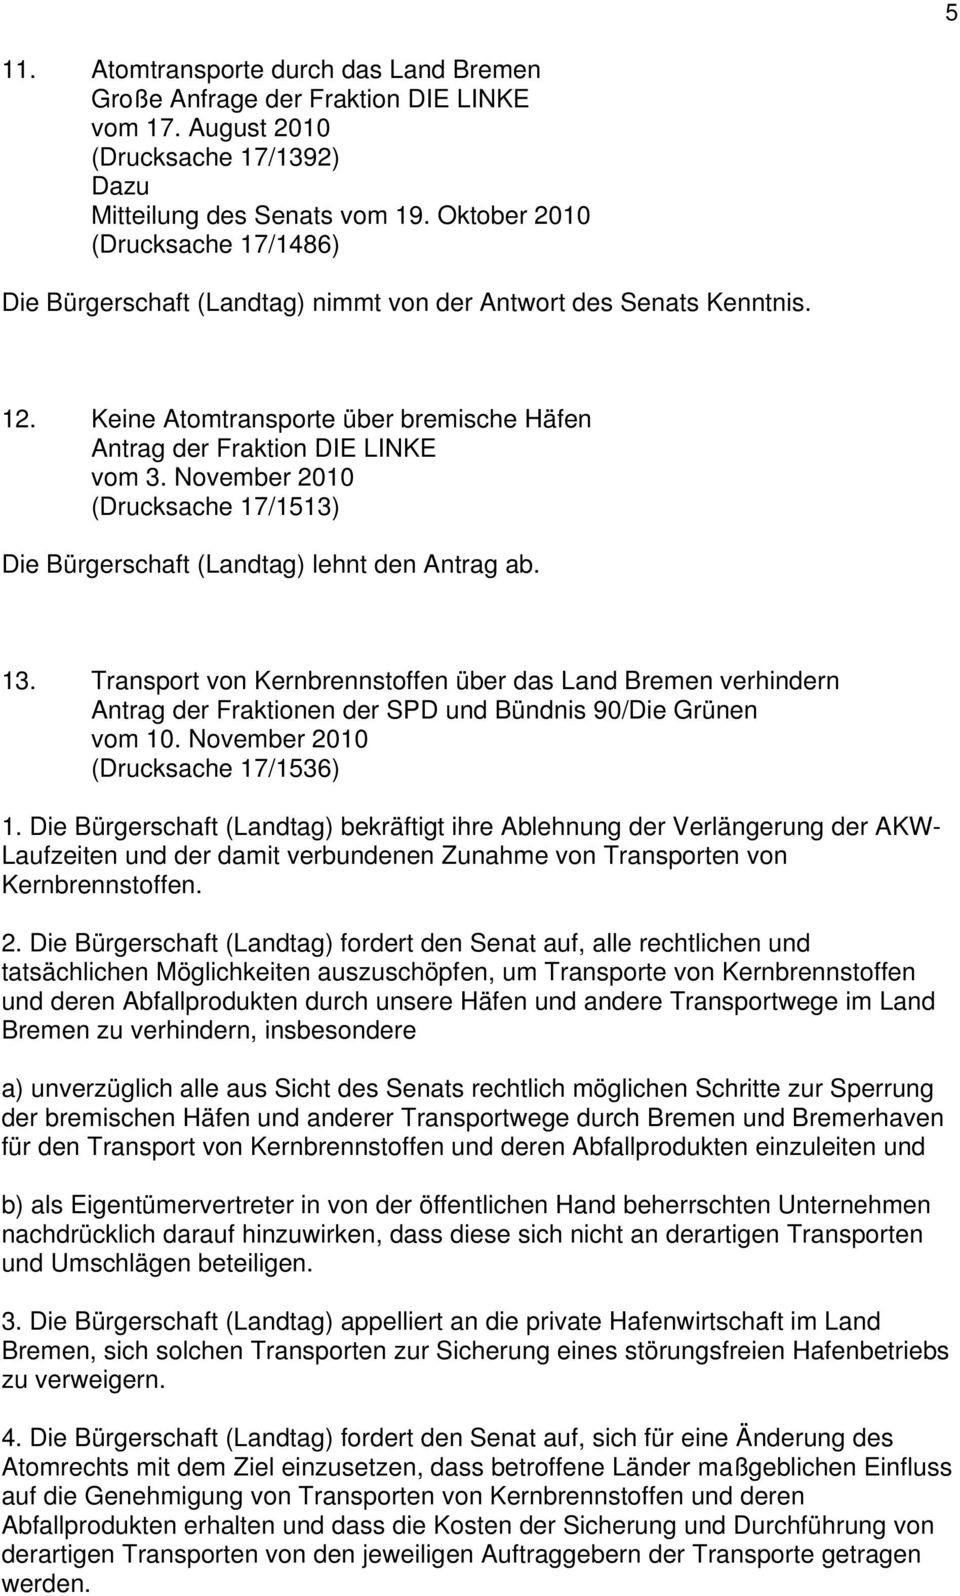 November 2010 (Drucksache 17/1513) Die Bürgerschaft (Landtag) lehnt den Antrag ab. 13. Transport von Kernbrennstoffen über das Land Bremen verhindern vom 10. November 2010 (Drucksache 17/1536) 1.